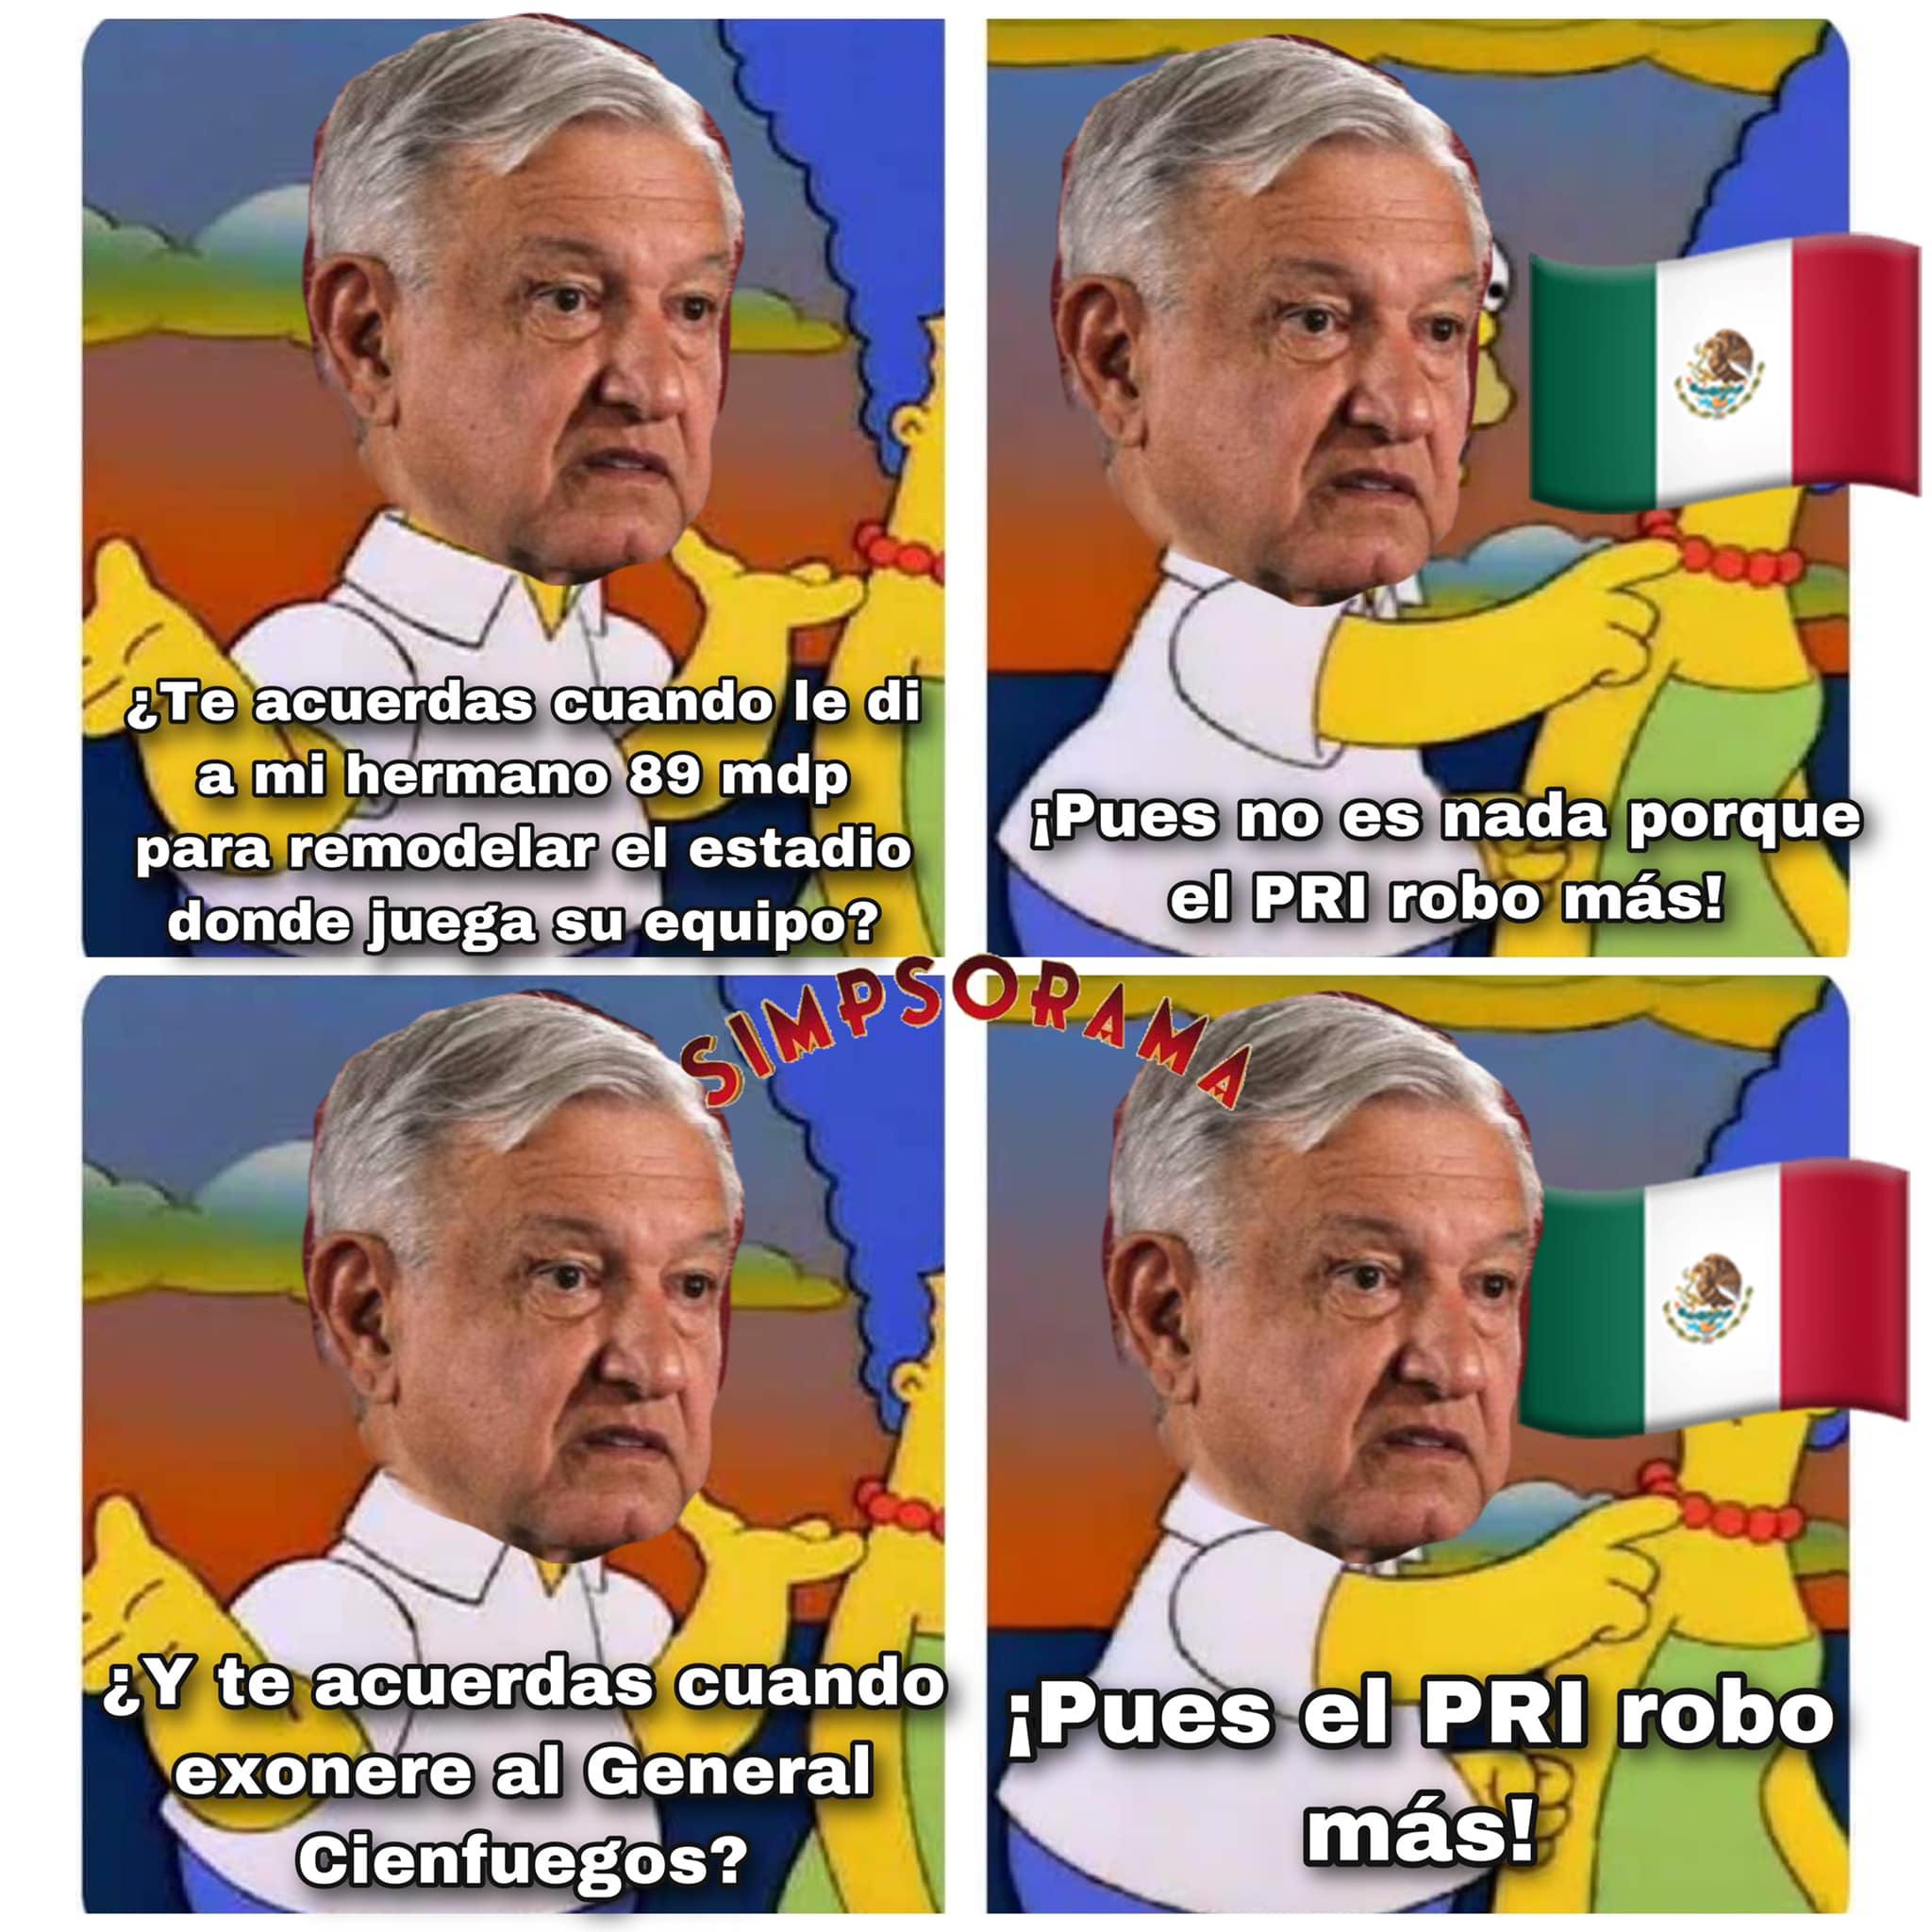 El PRI robó más memes